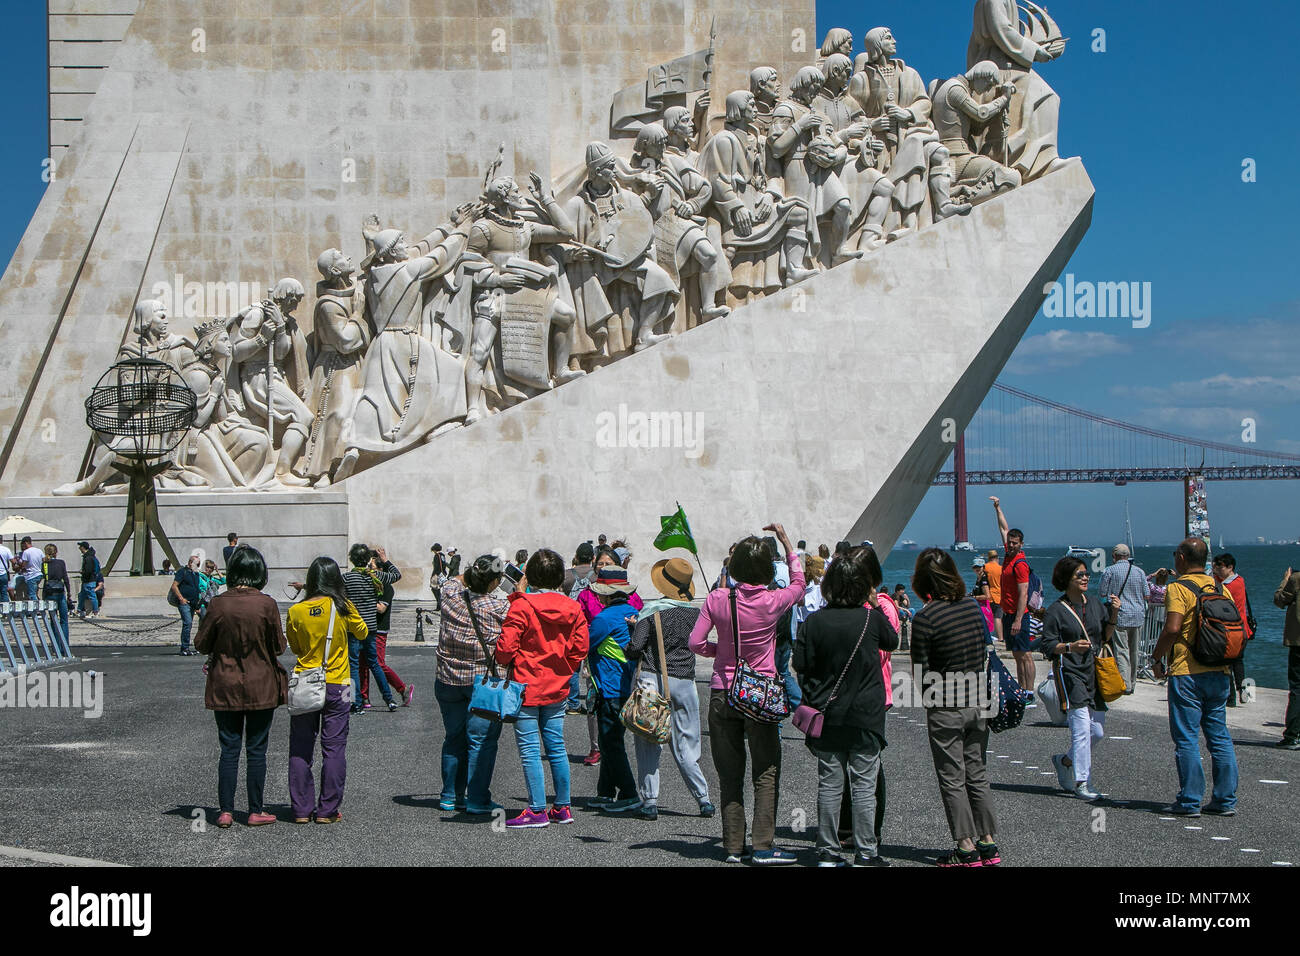 Les touristes asiatiques sont à prendre des photos devant le Monument aux découvertes à Belém, Lisbonne, Portugal. Banque D'Images